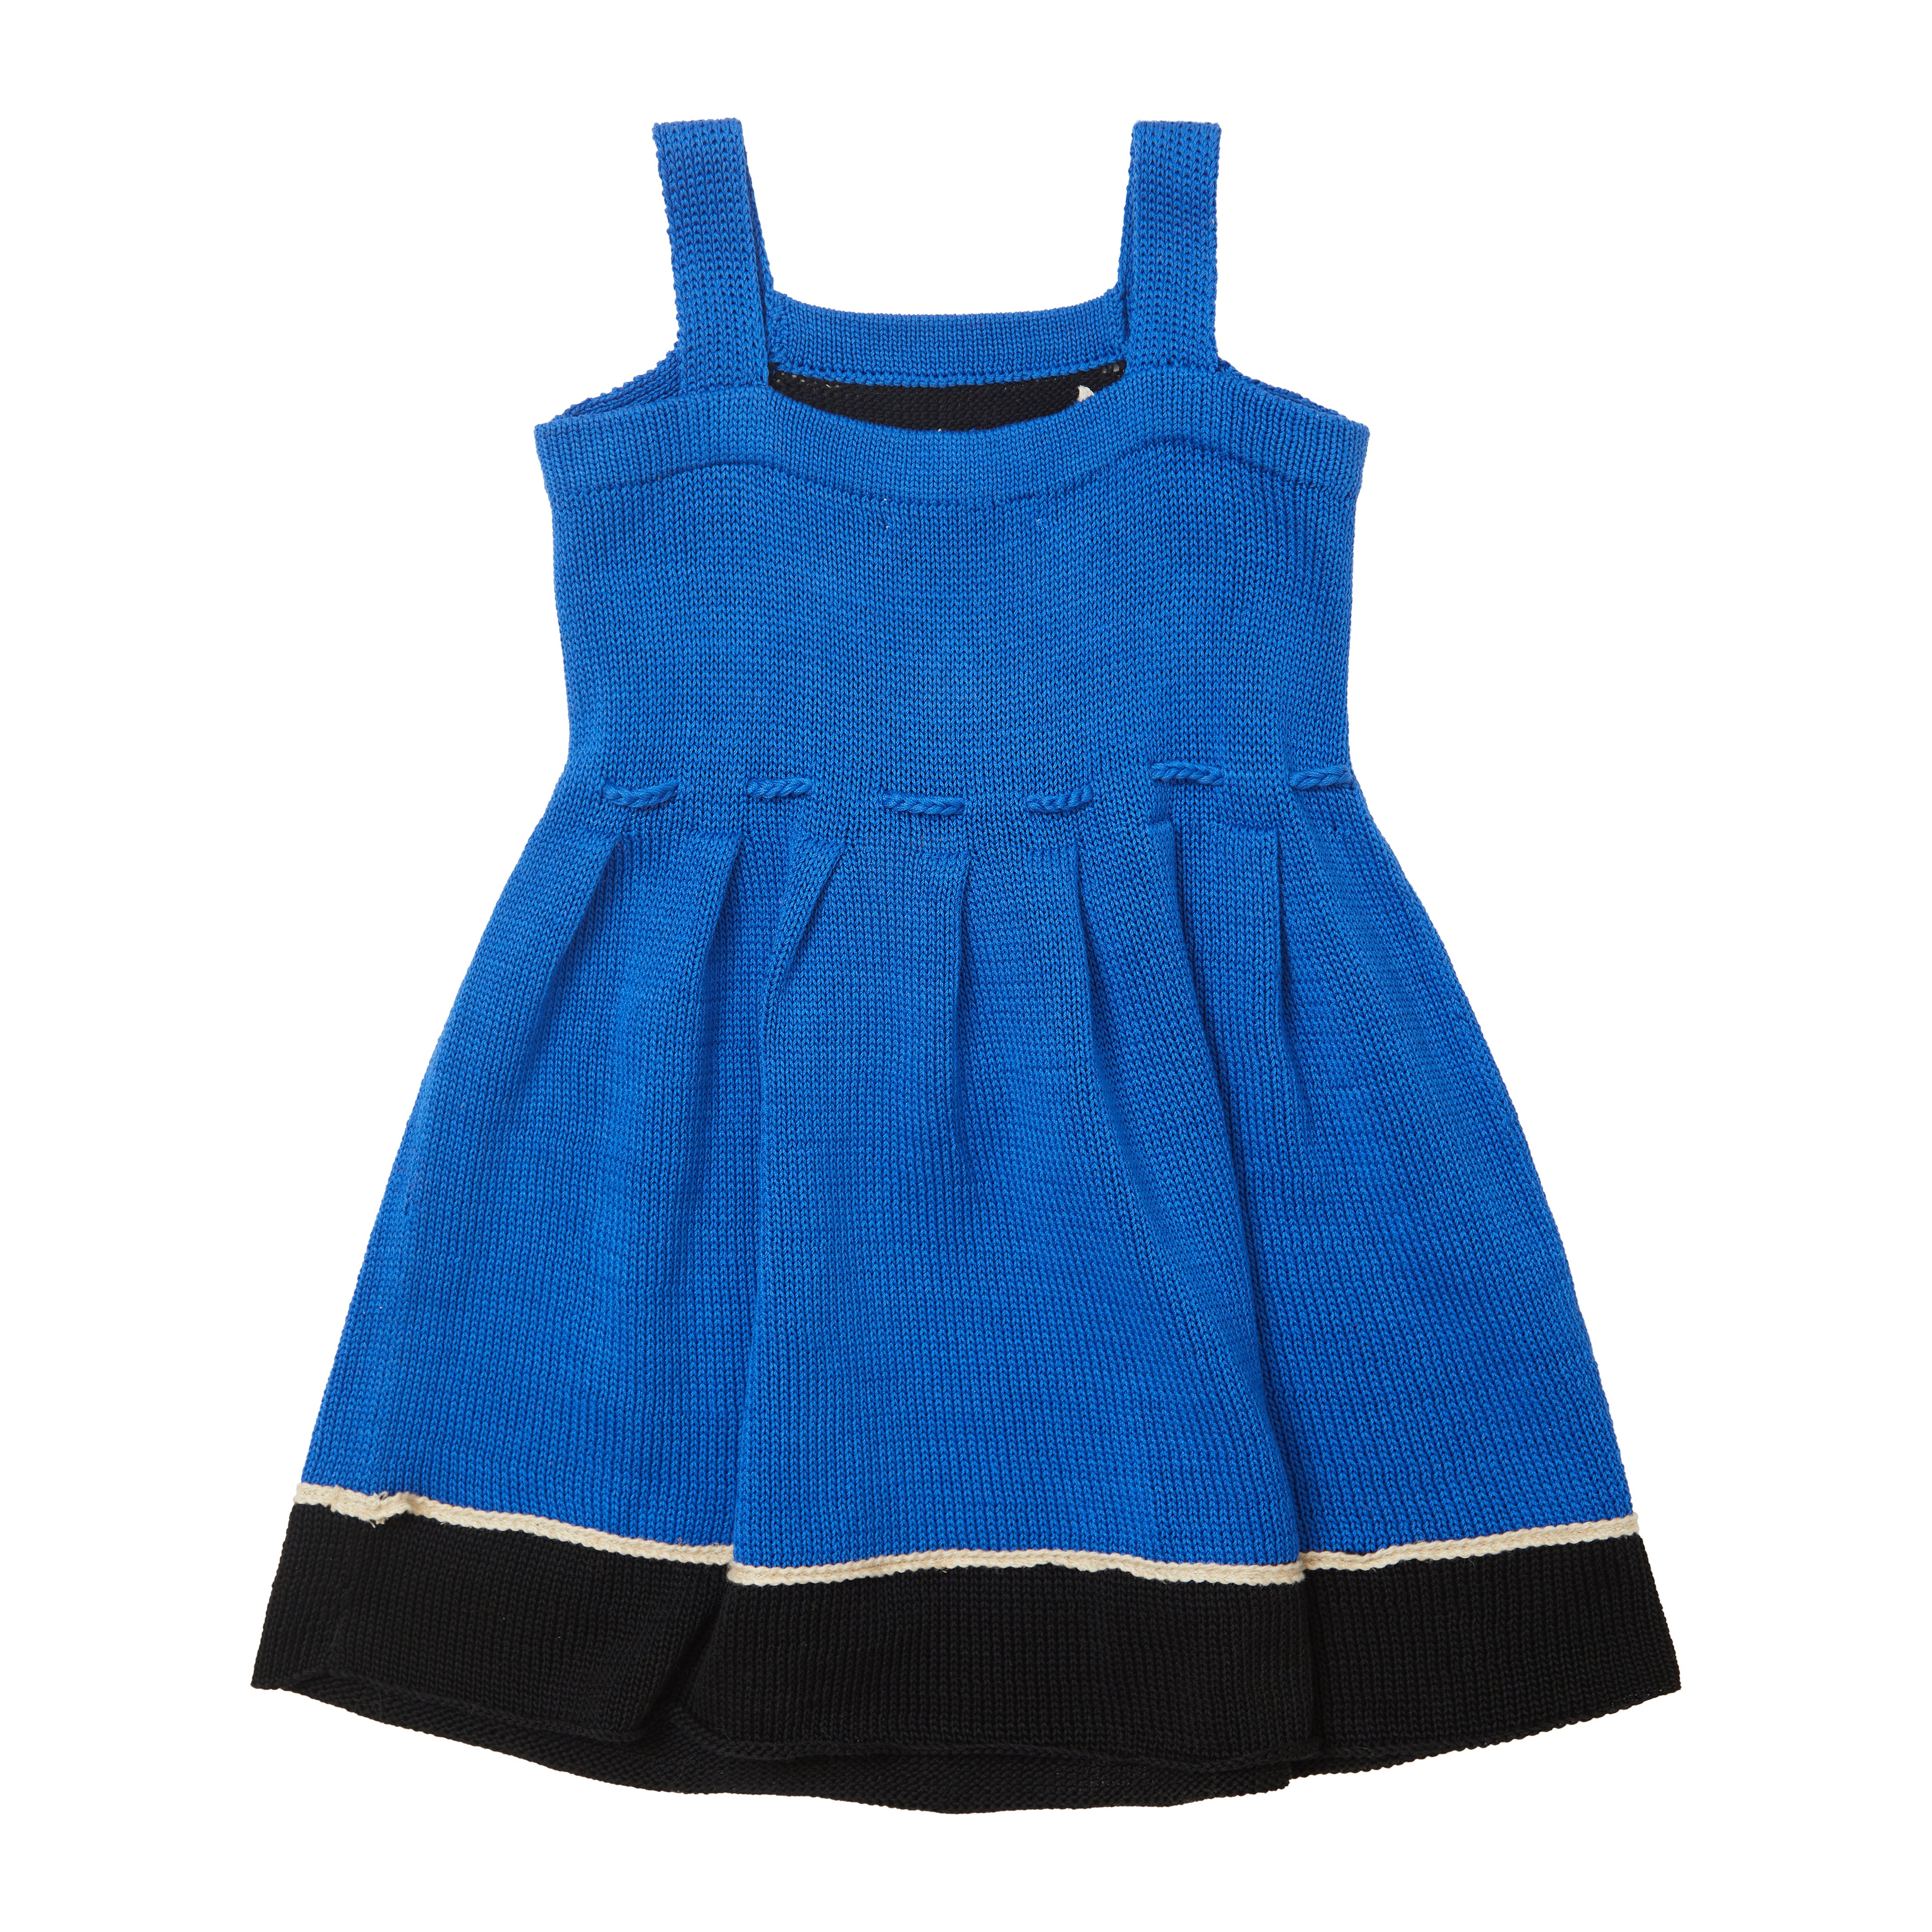 Girls Blue Cotton Dress